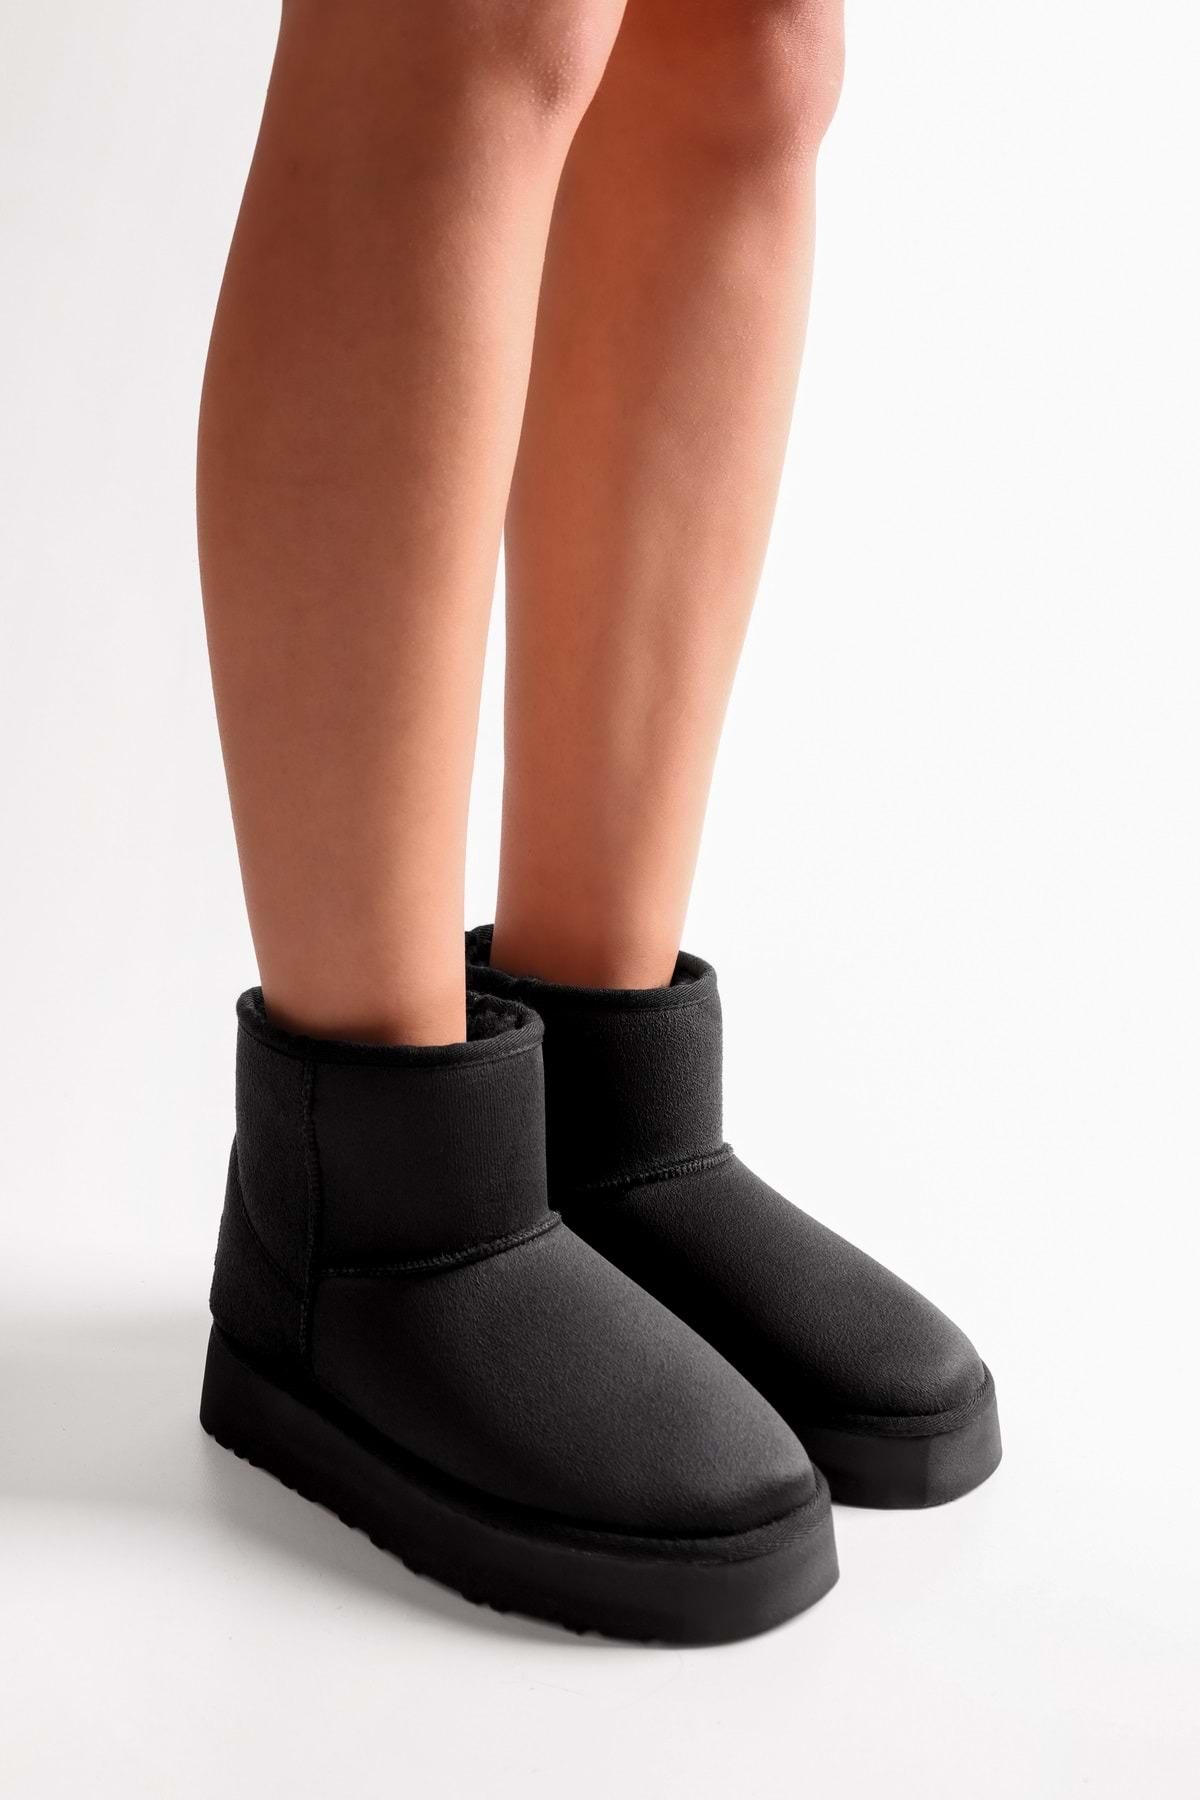 Shoeberry Women's Uggy Black Pile Short Suede Boots Black Textile.